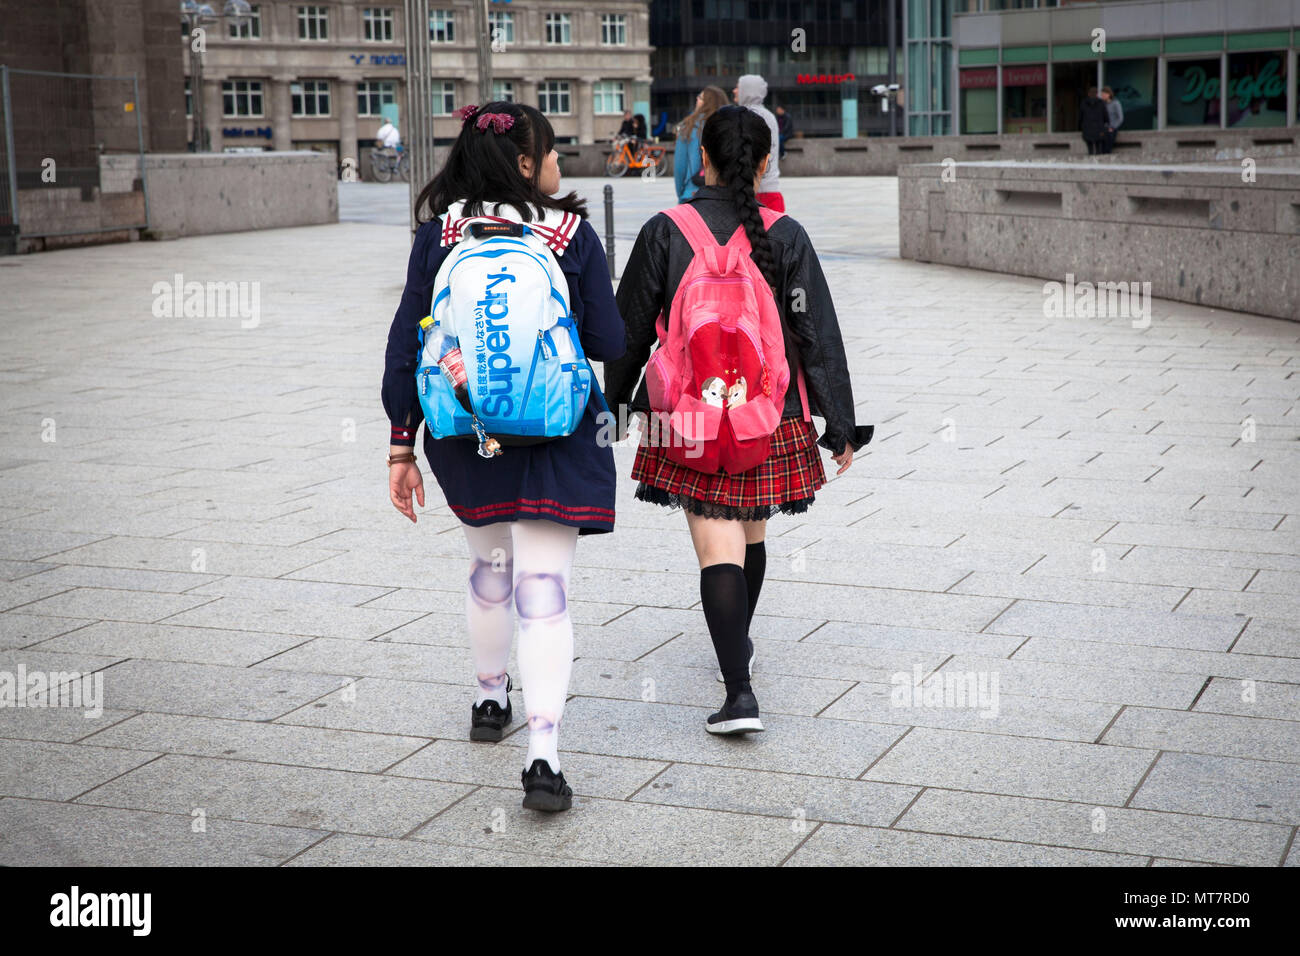 Germania, Colonia, due ragazze giapponesi con zaini sulla loro strada verso la stazione centrale. Europa, Deutschland, Koeln, zwei japanische Maedchen mit Ruc Foto Stock